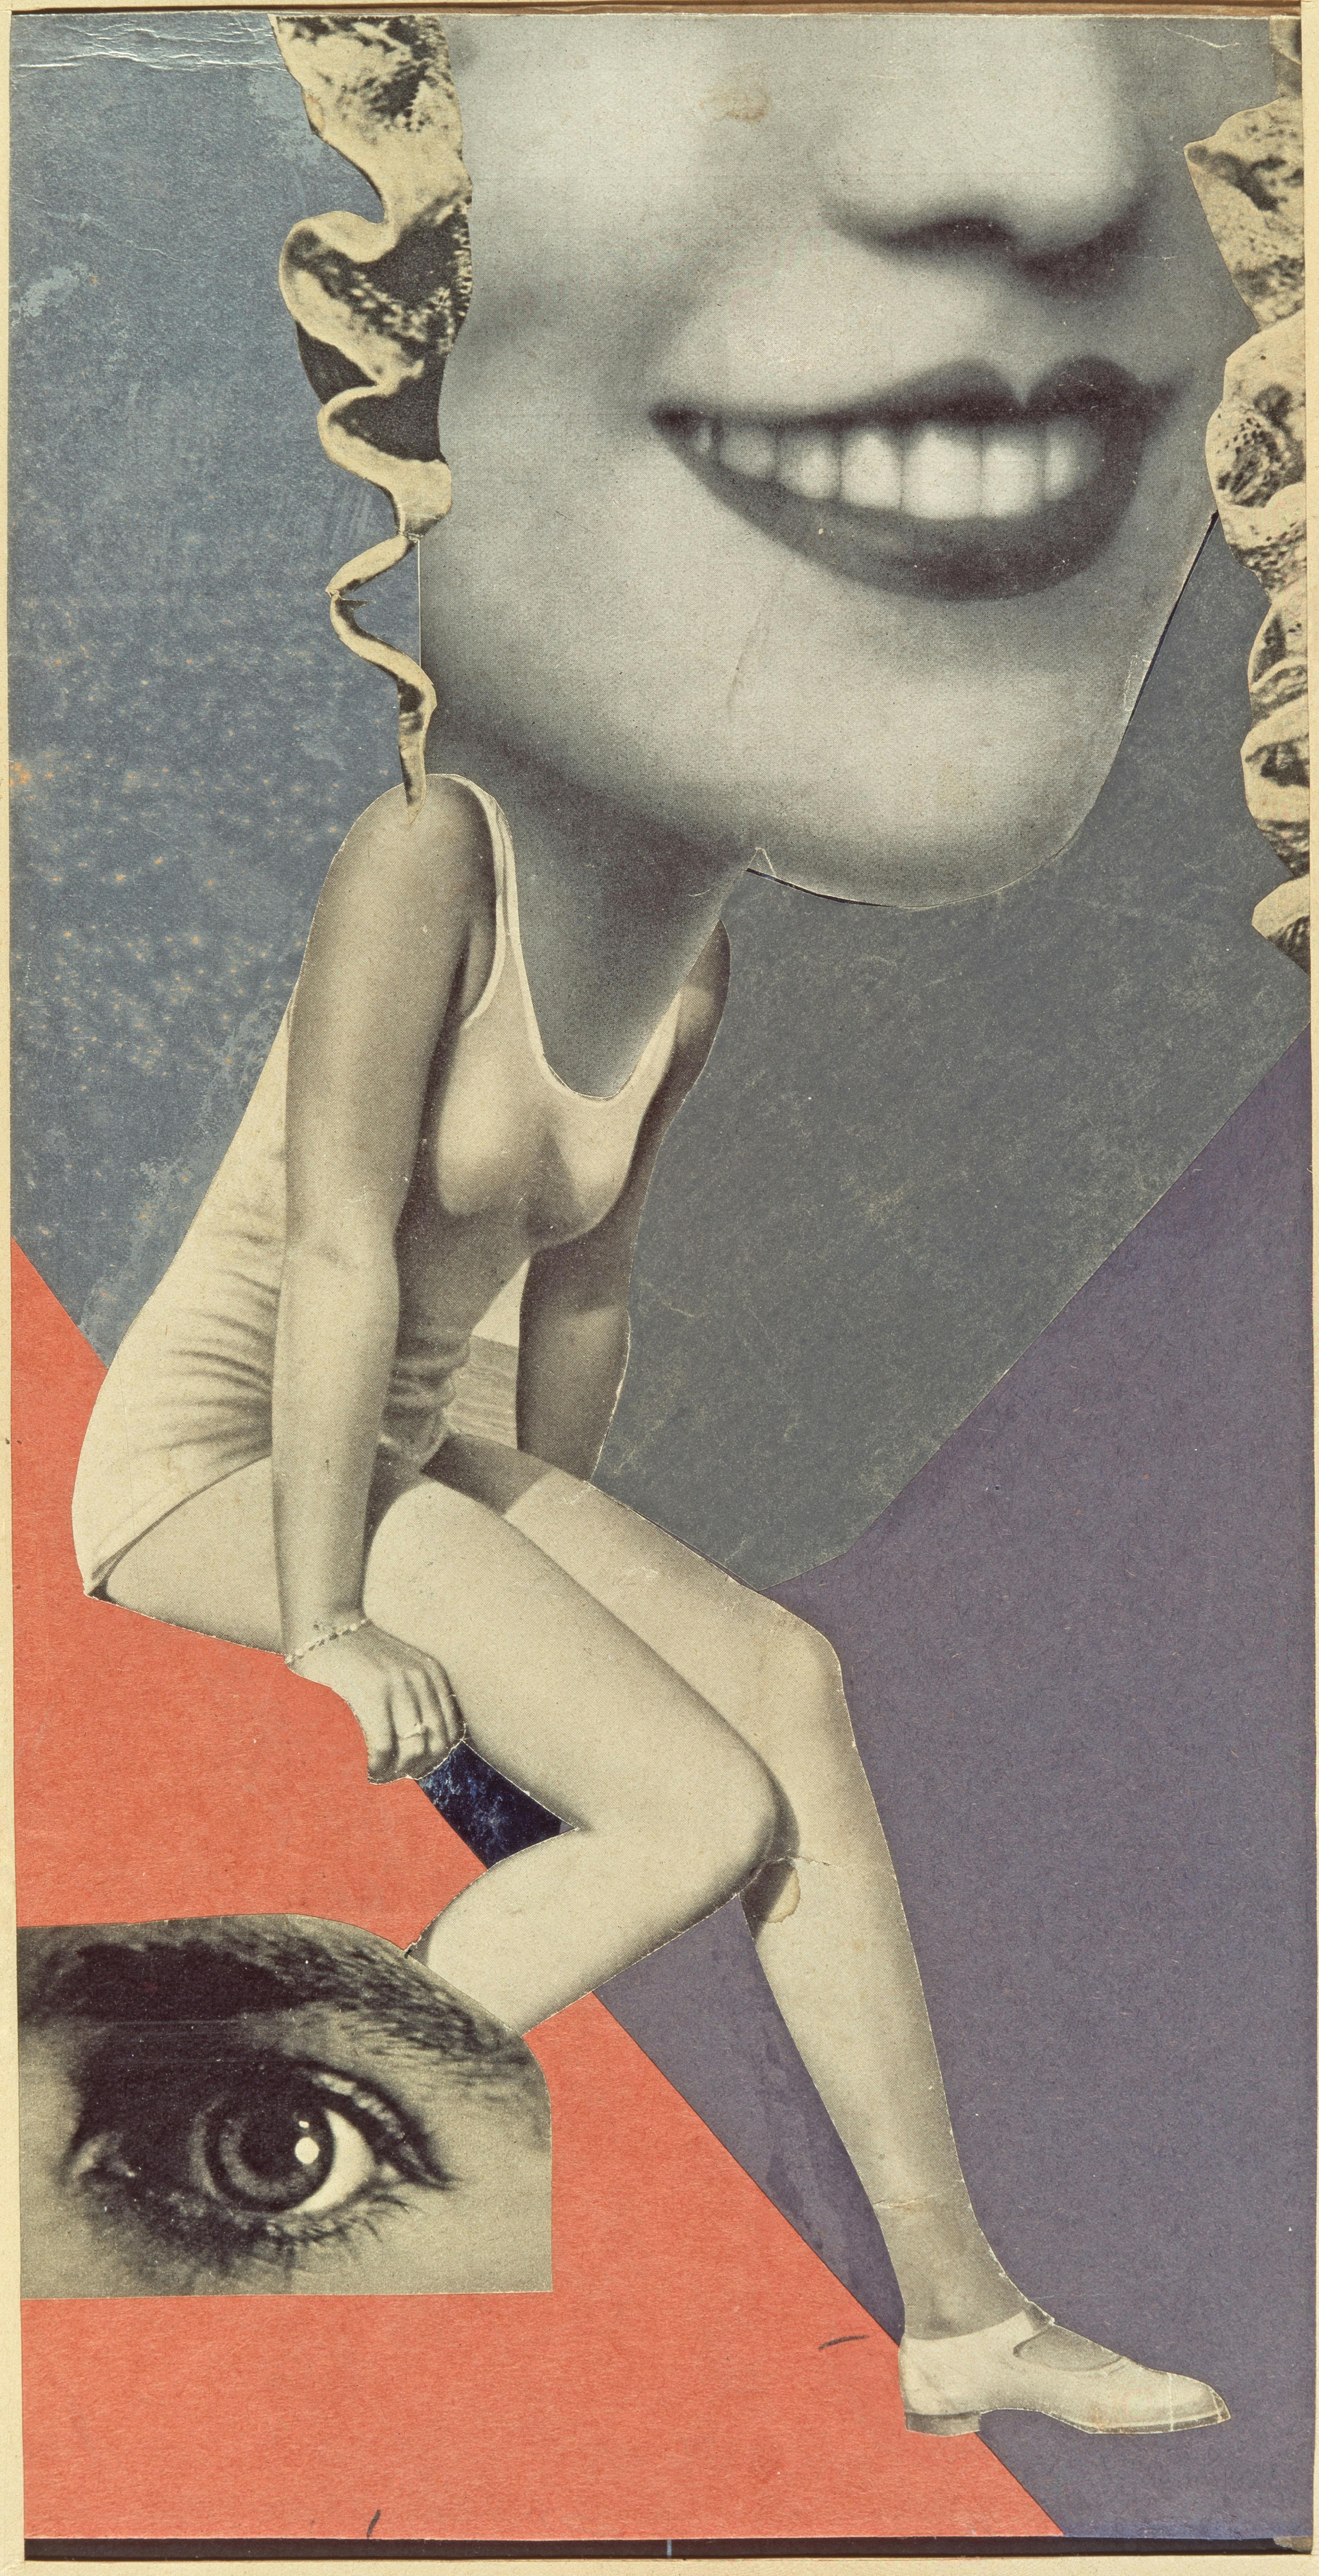 Hannah Höch, Für ein Fest gemacht, 1936, Collage, 36 x 19,8 cm, Institut für Auslandsbeziehungen e. V., Stuttgart, © 2023, ProLitteris, Zurich